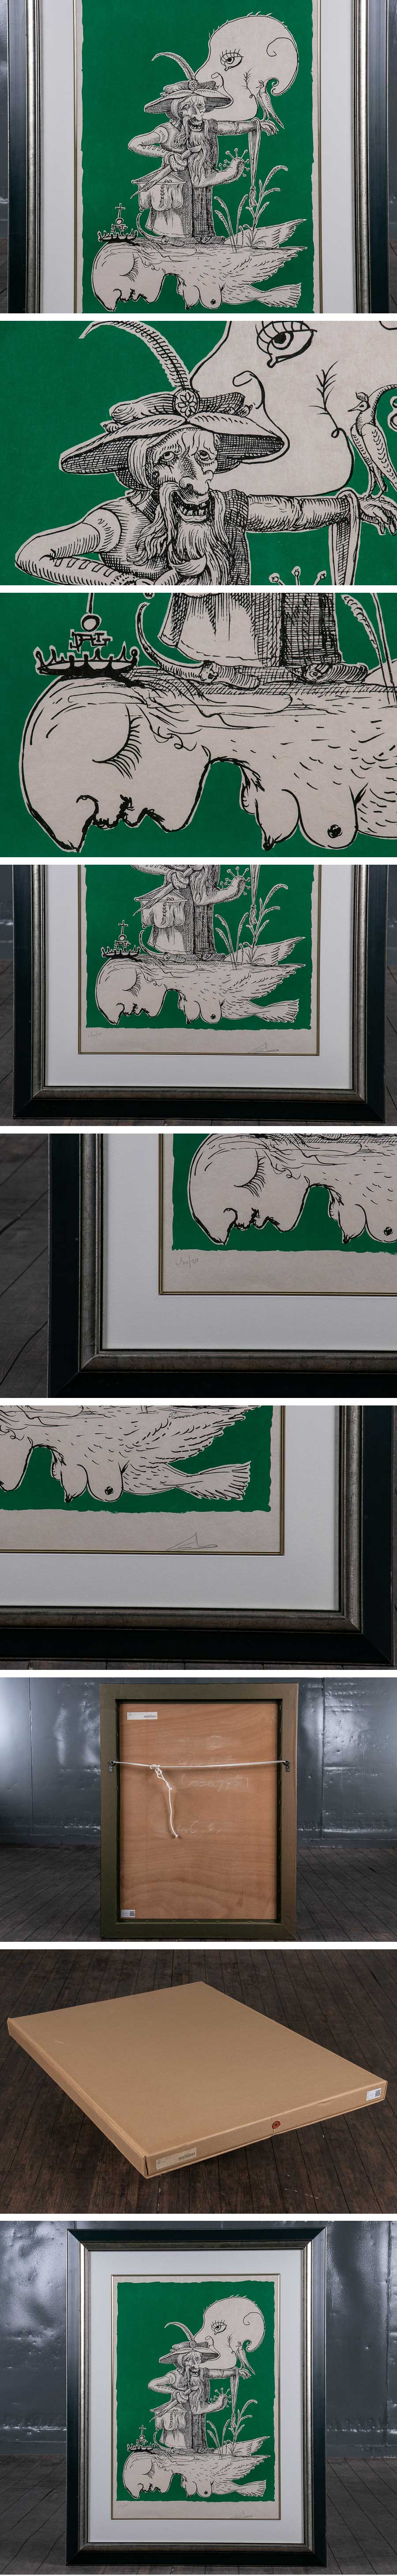 【日本売品】『 サルバドール・ダリ 「 パンタグリュエルの滑稽な夢 」より PL19 100/250 アクリル板 額装 S542 』絵画 インテリア 芸術 美術 その他